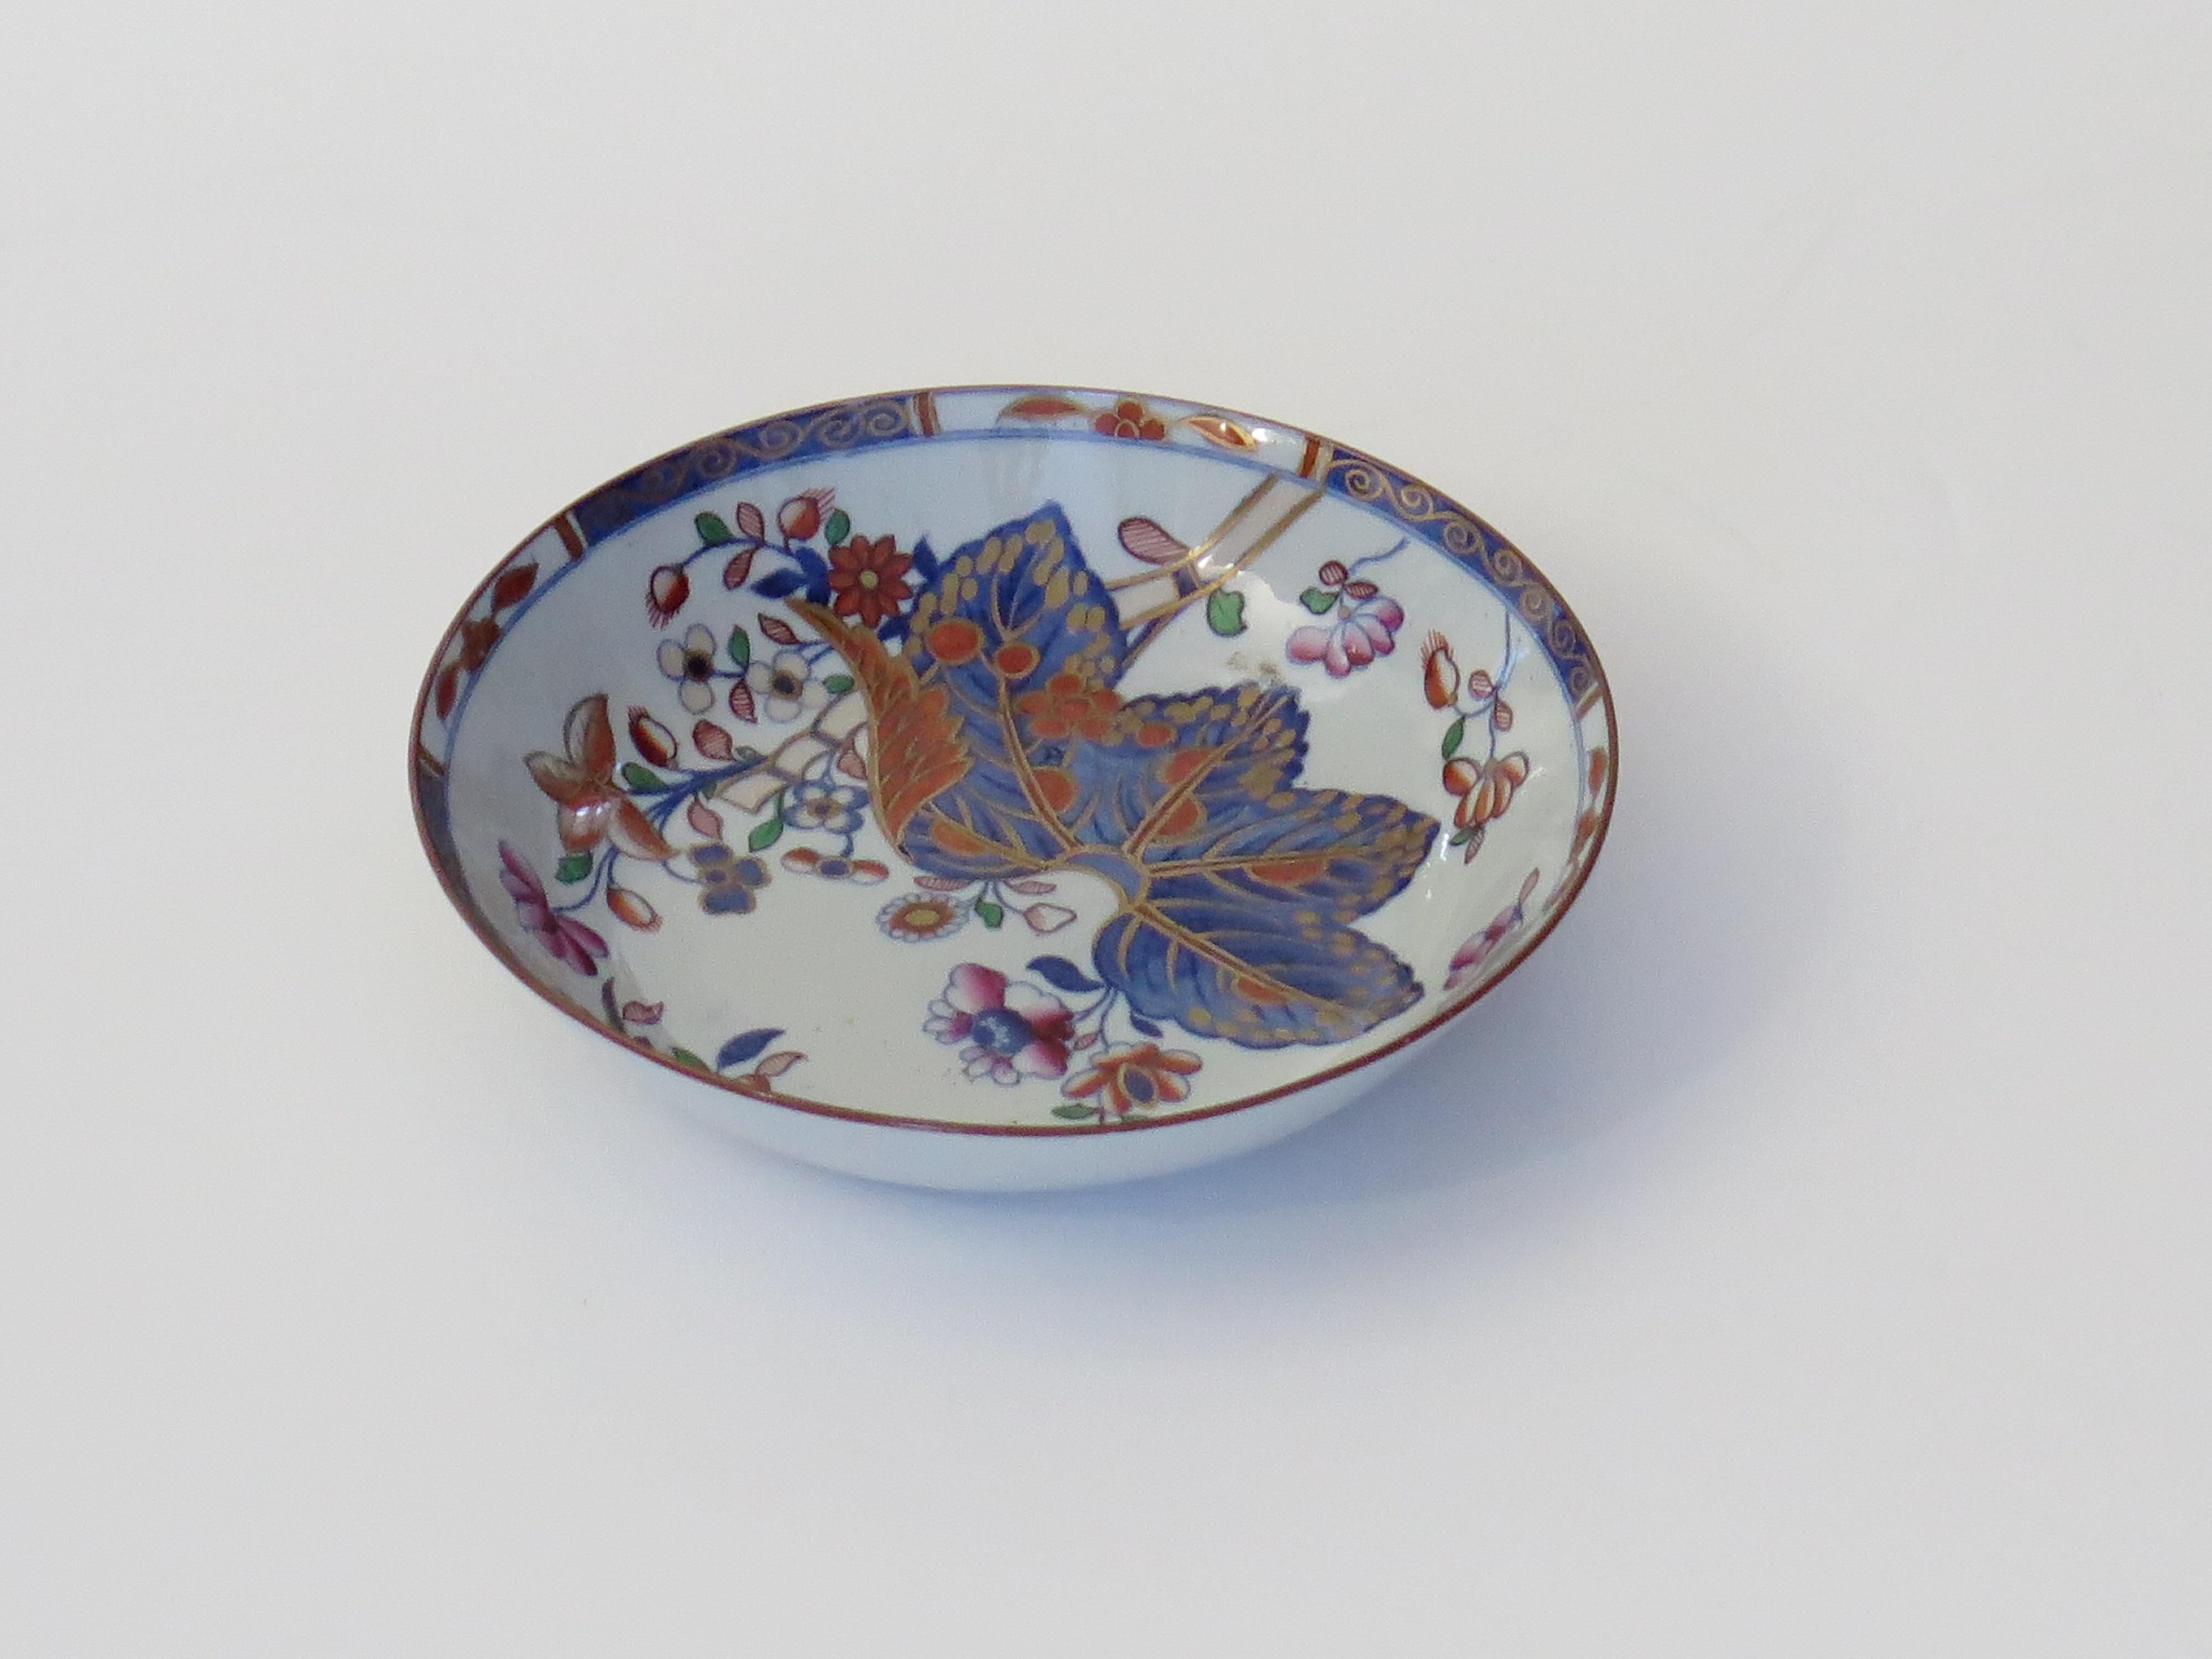 Il s'agit d'un très bon plat ou petit bol en pierre de Chine (poterie Ironstone), peint à la main dans le motif de la feuille de tabac, numéro 2061, fabriqué par l'usine Spode au début du 19e siècle, période géorgienne anglaise, vers 1820.

Le plat